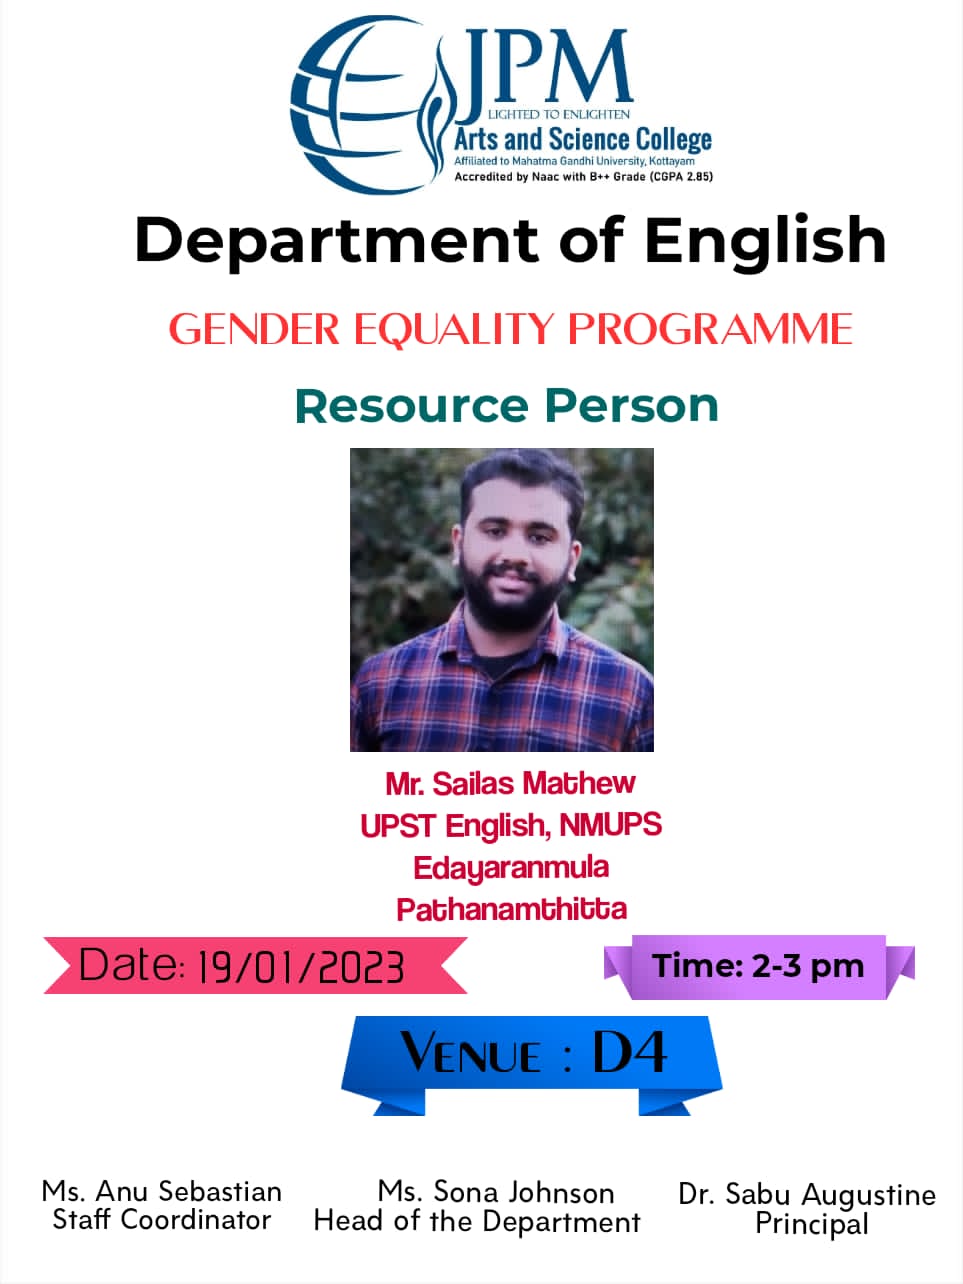 Gender Equality Programme